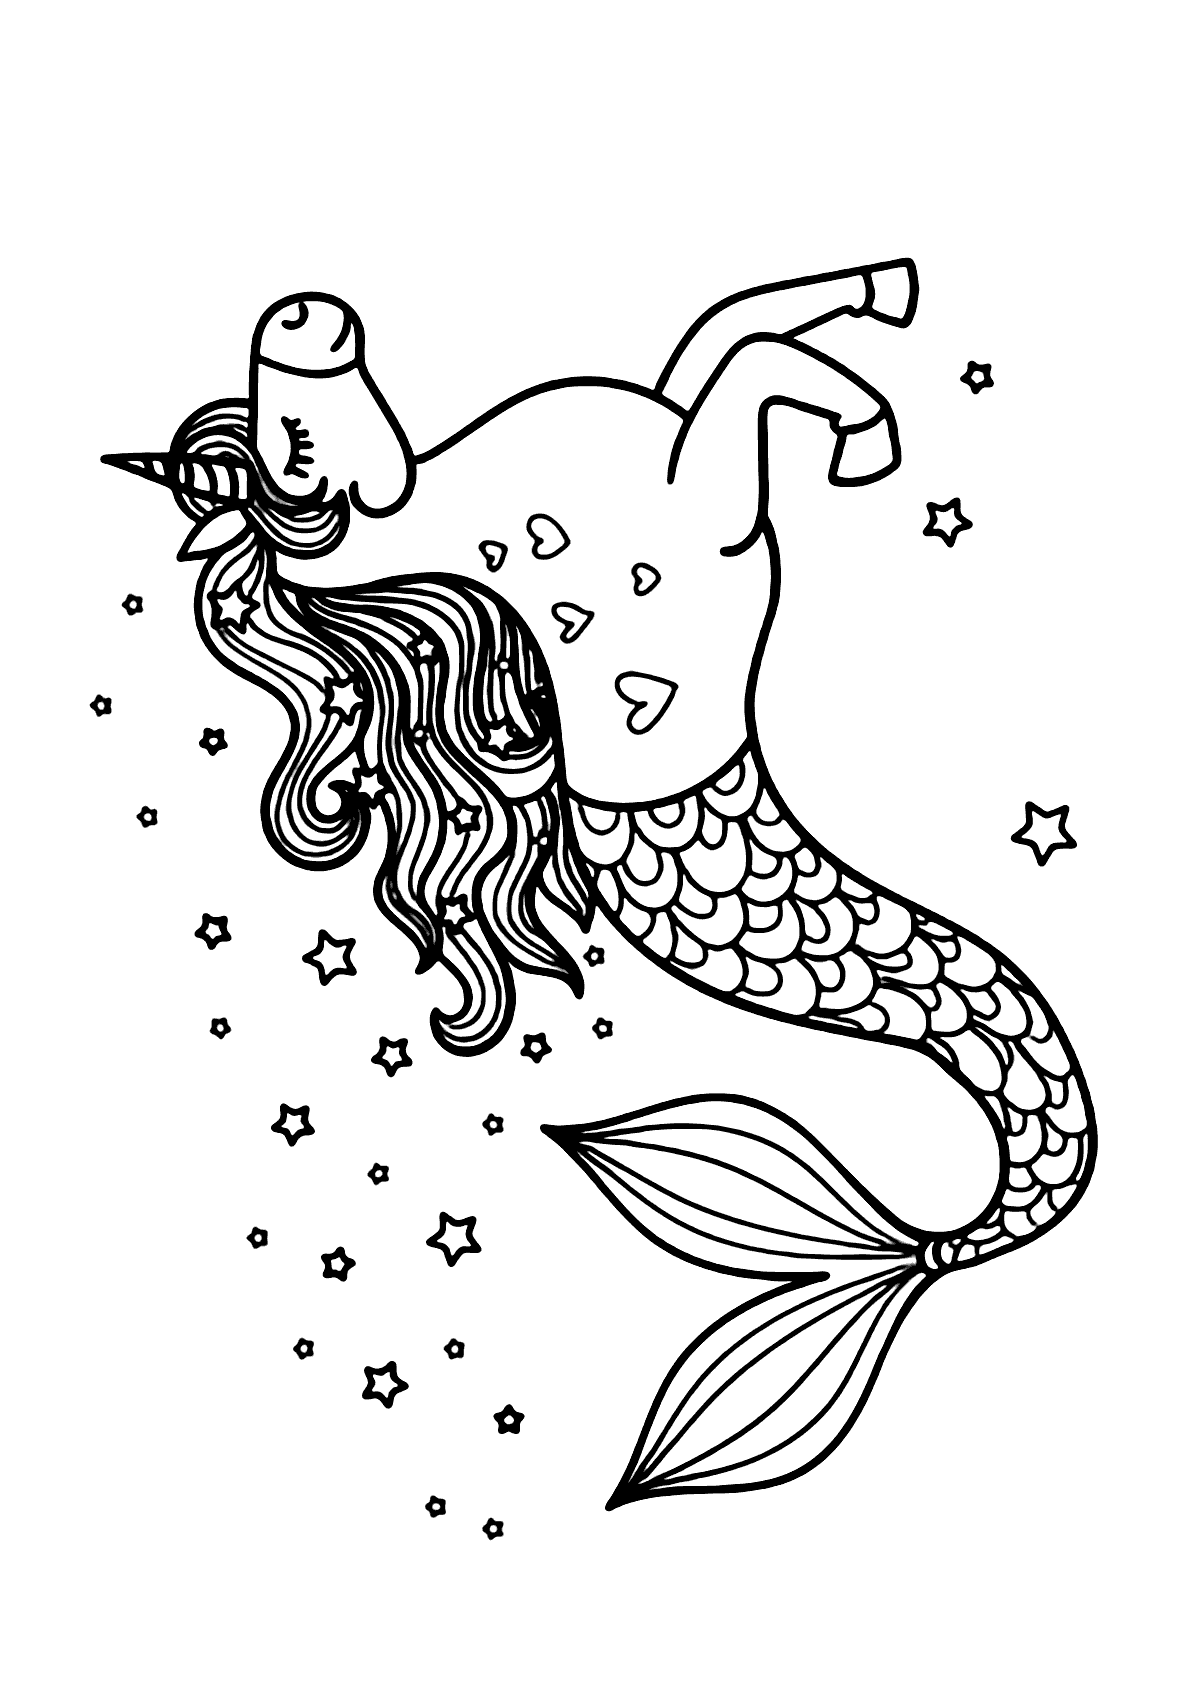 Desenho de uma linda sereia de unicórnio para colorir